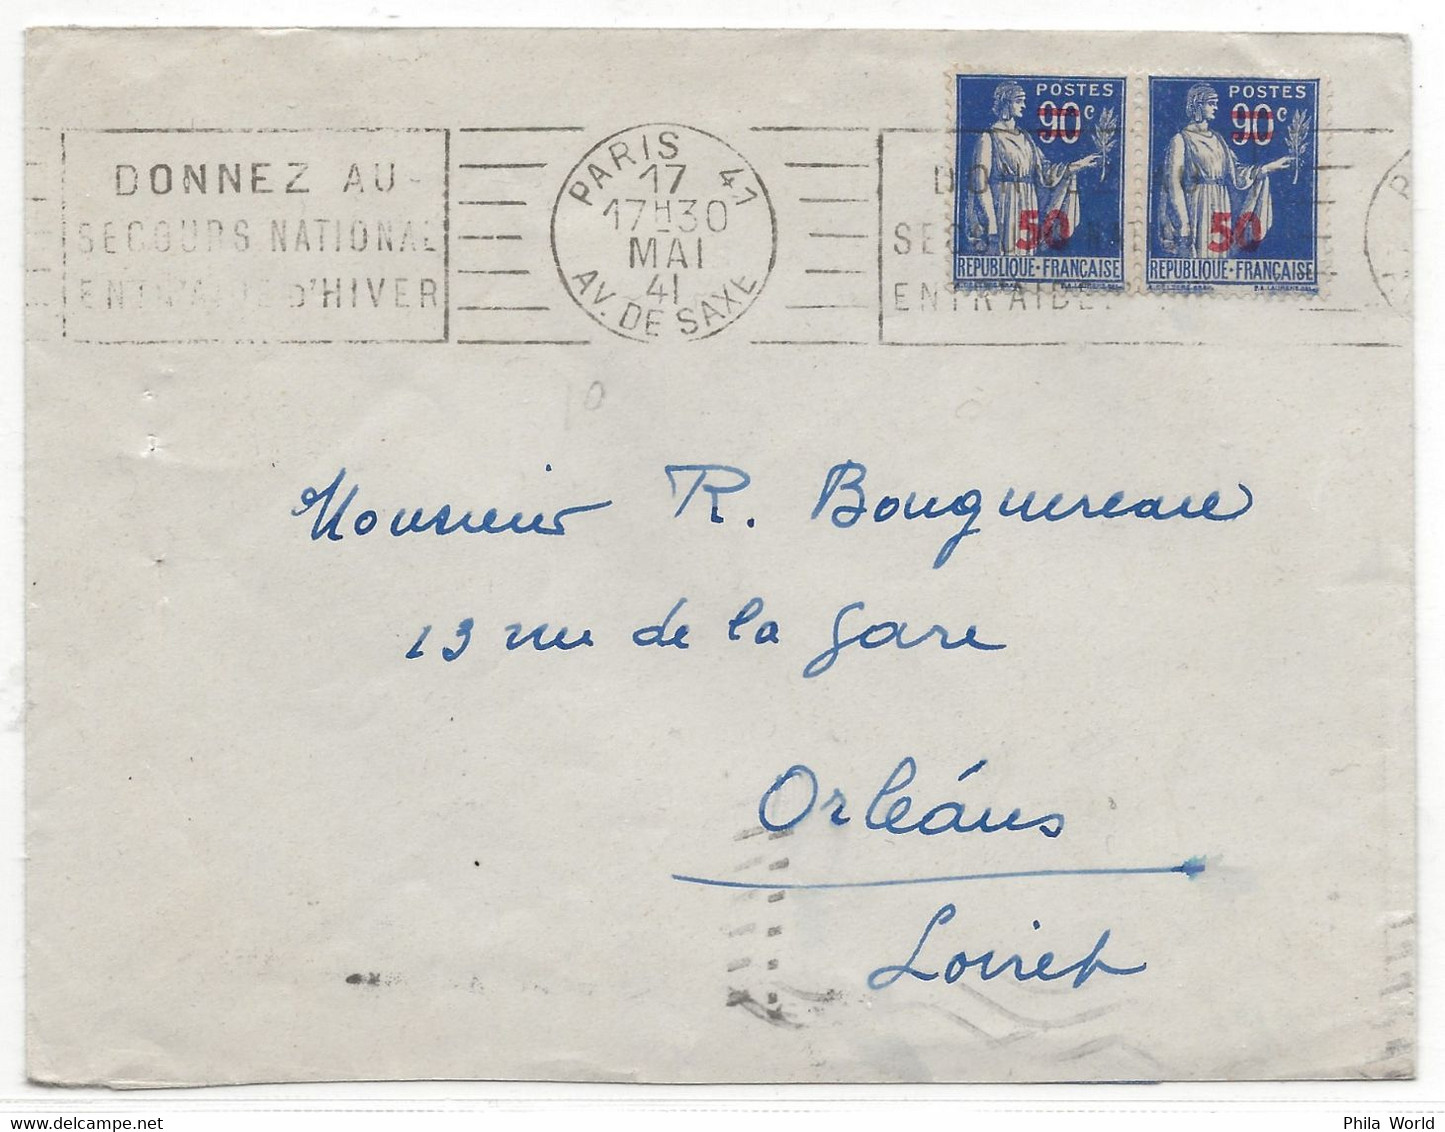 WW2 FRANCE 1941 Type PAIX Surcharge PARIS 41 SAXE DONNEZ SECOURS NATIONAL ENTRAIDE HIVER > Orleans LOIRET - Covers & Documents